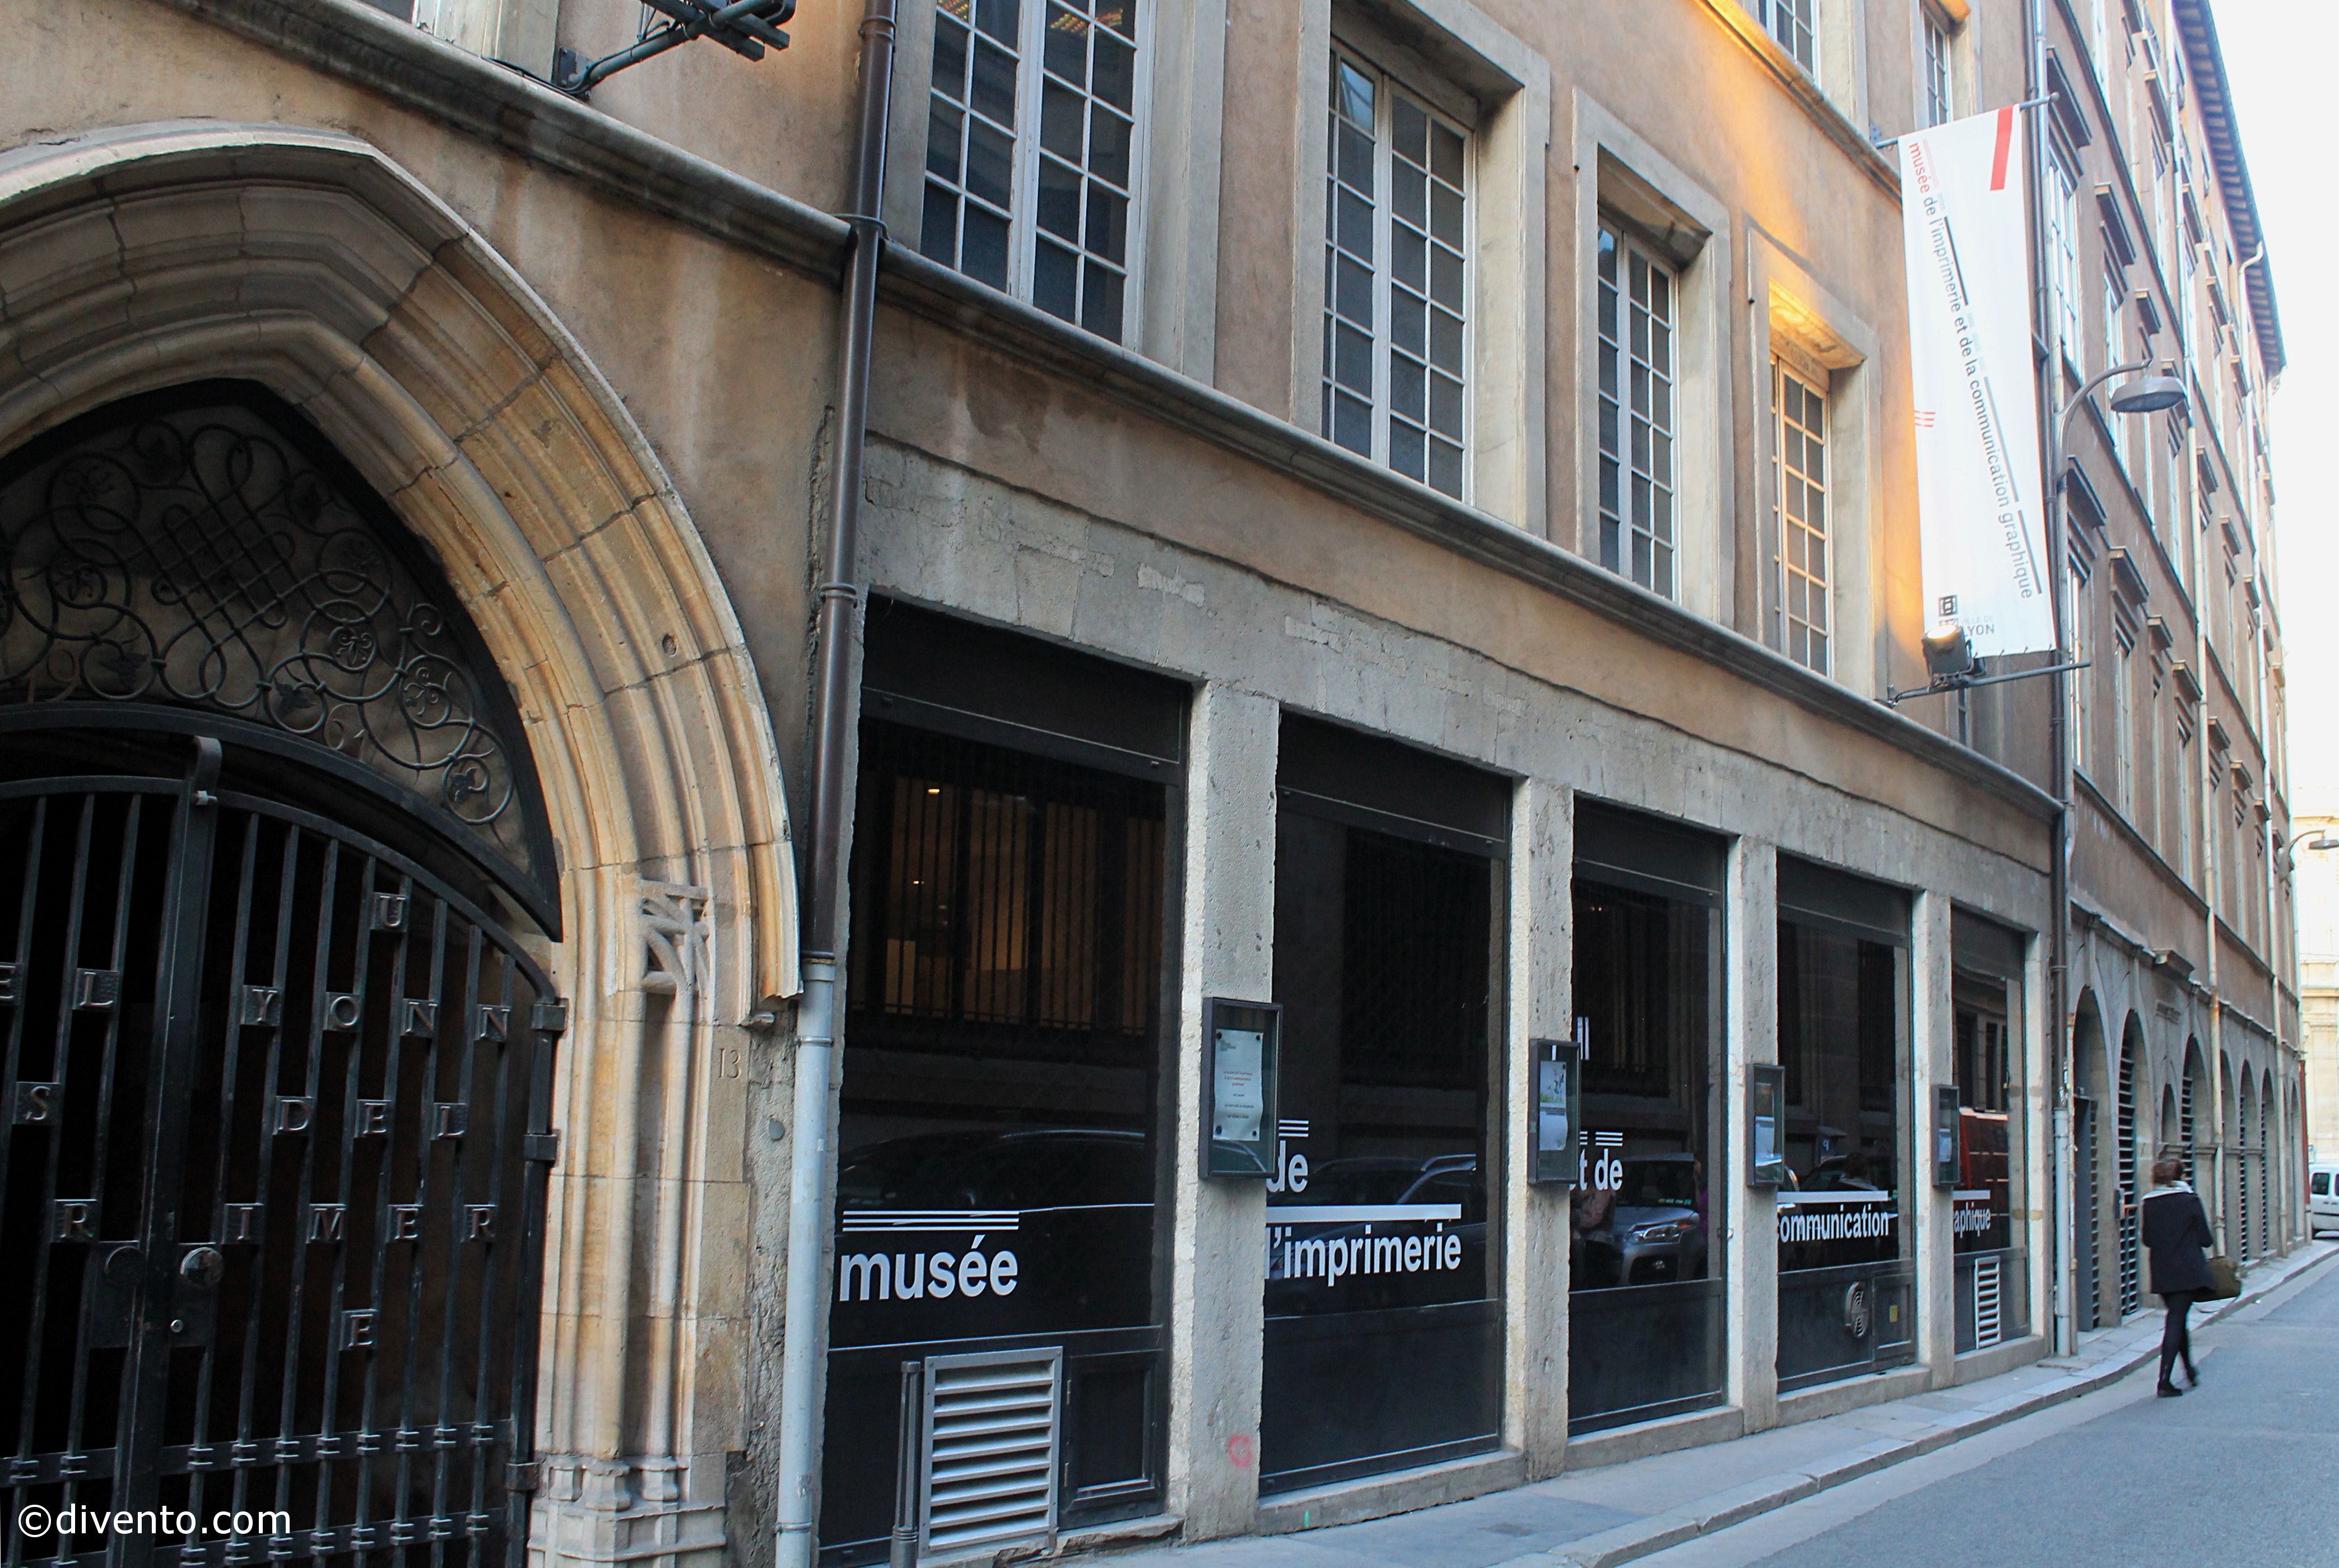 Musée de l'Imprimerie, Lyon: All year